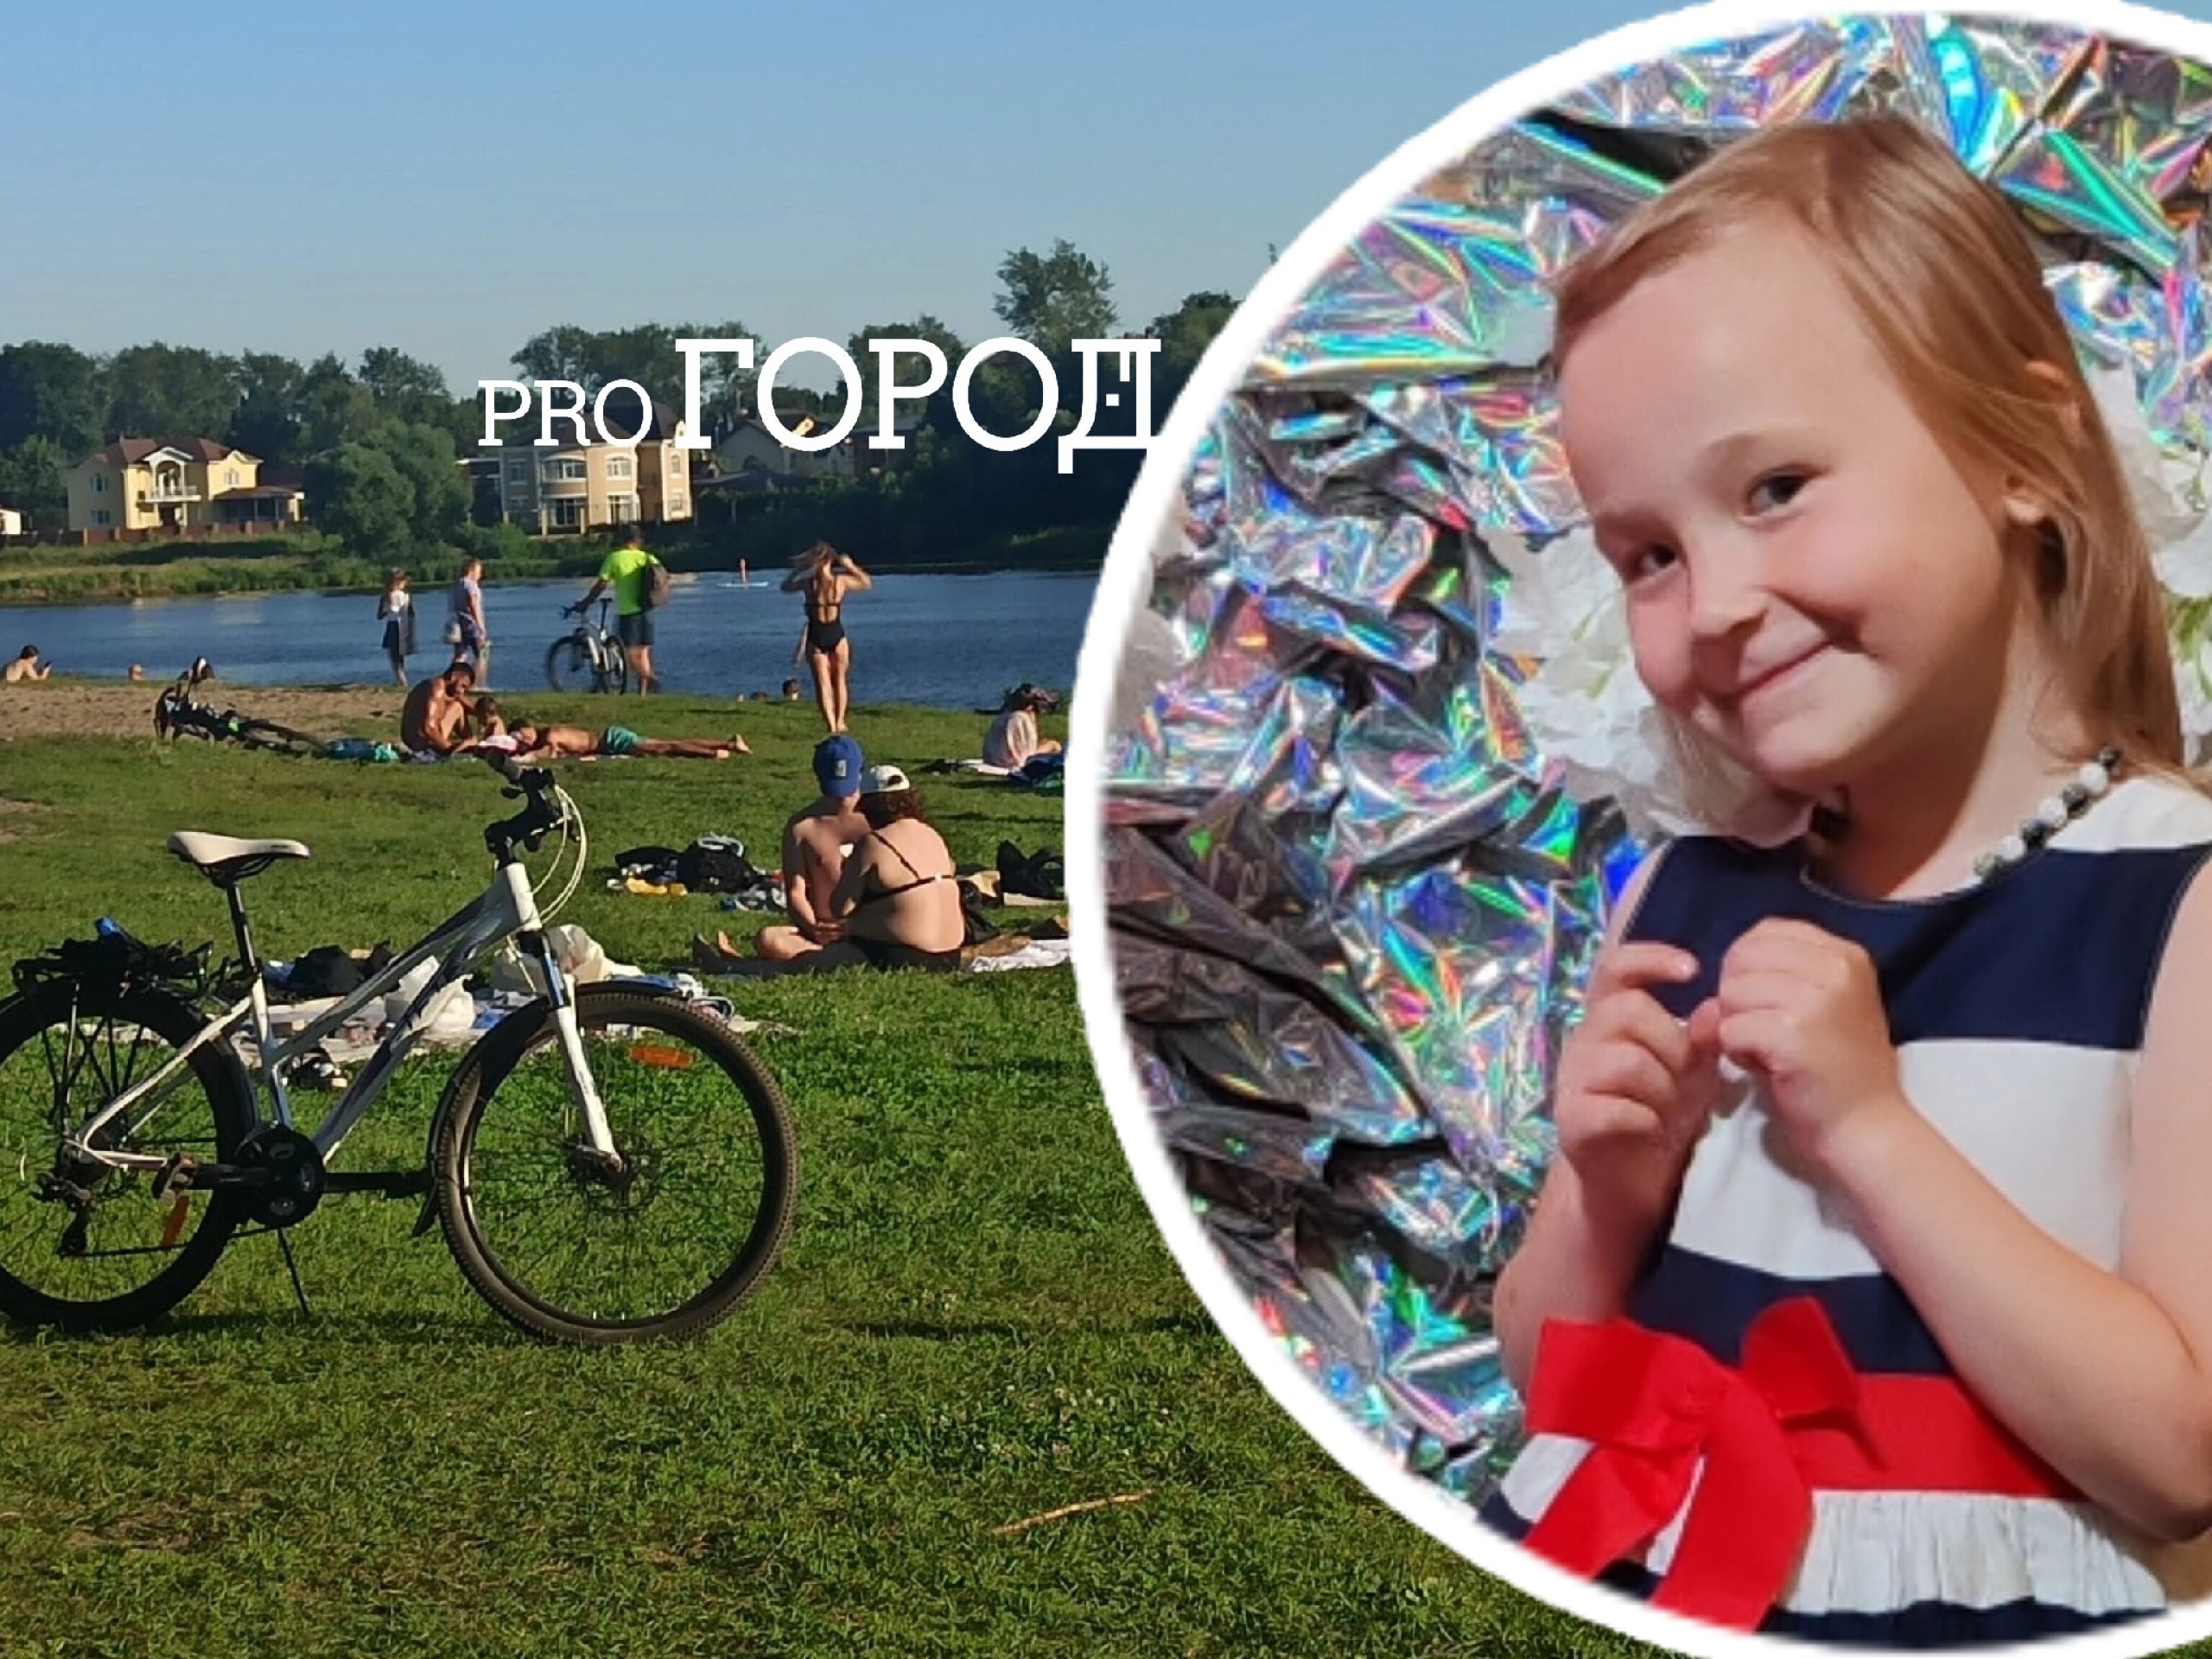 "Парень, благодарна безмерно!": в Ярославле юноша спас девочку, падающую на велосипеде с обрыва